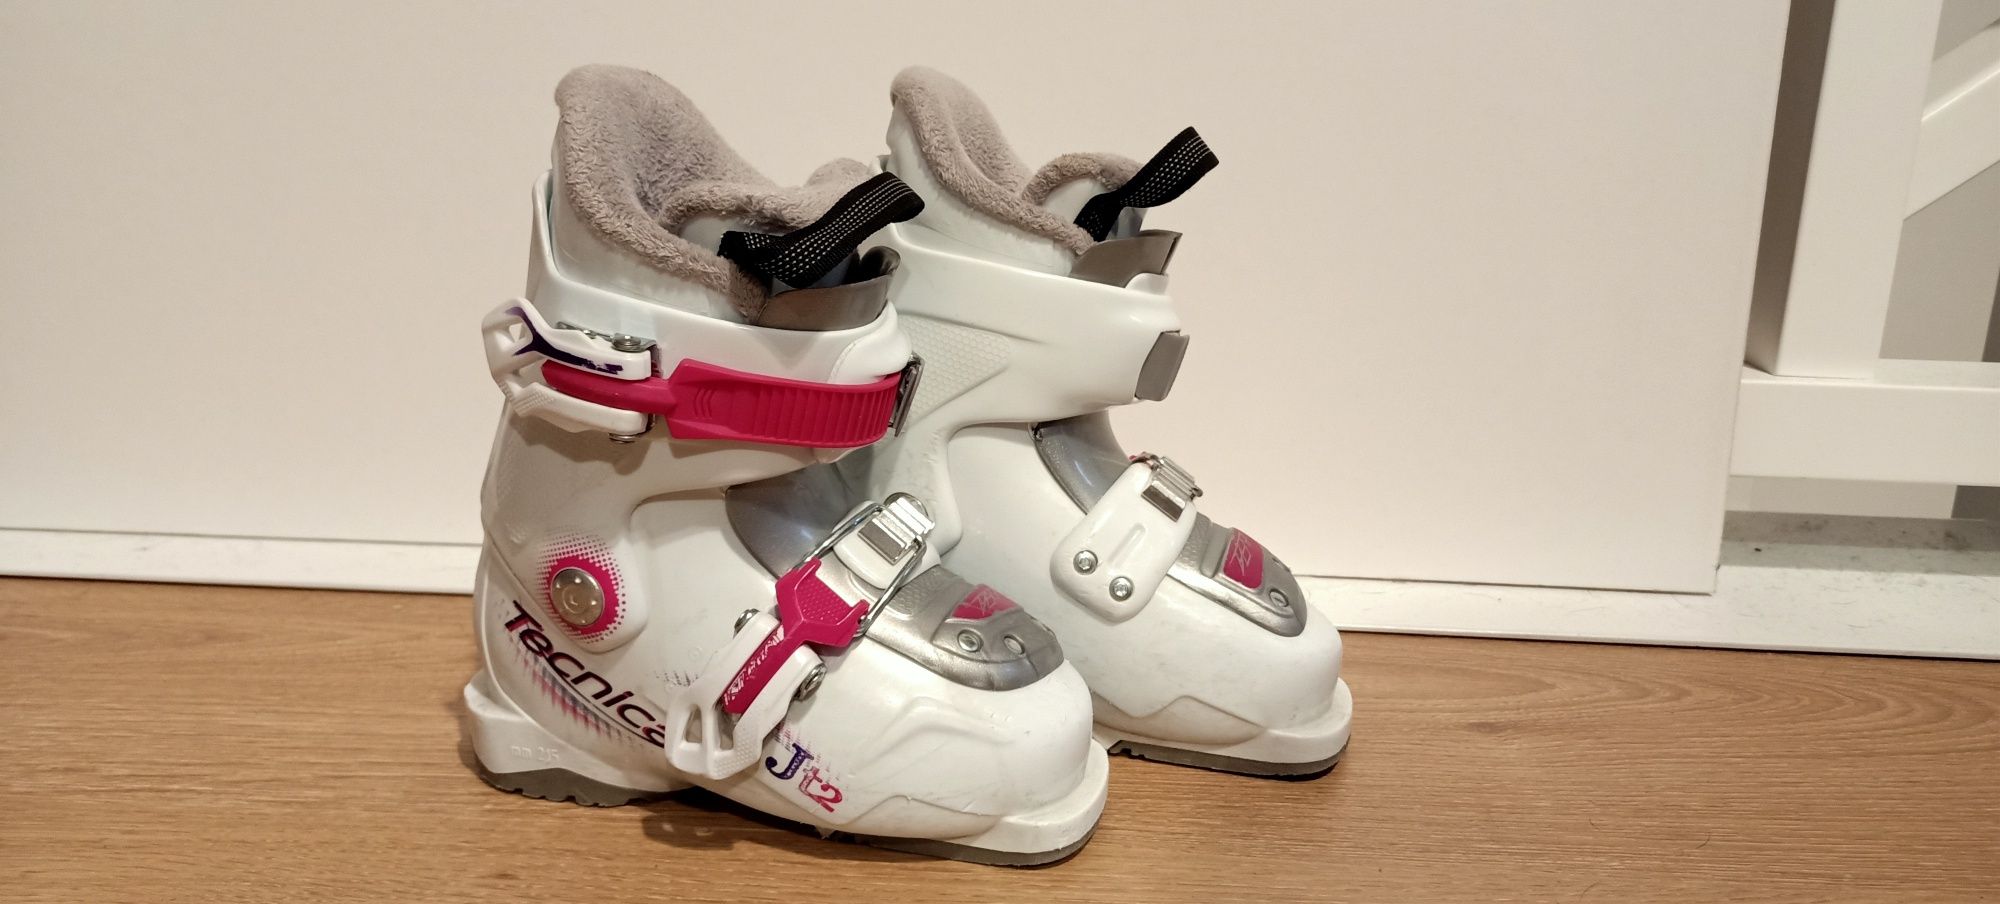 Buty narciarskie dziecięce dla dziewczynki 175 17.5 r. 28